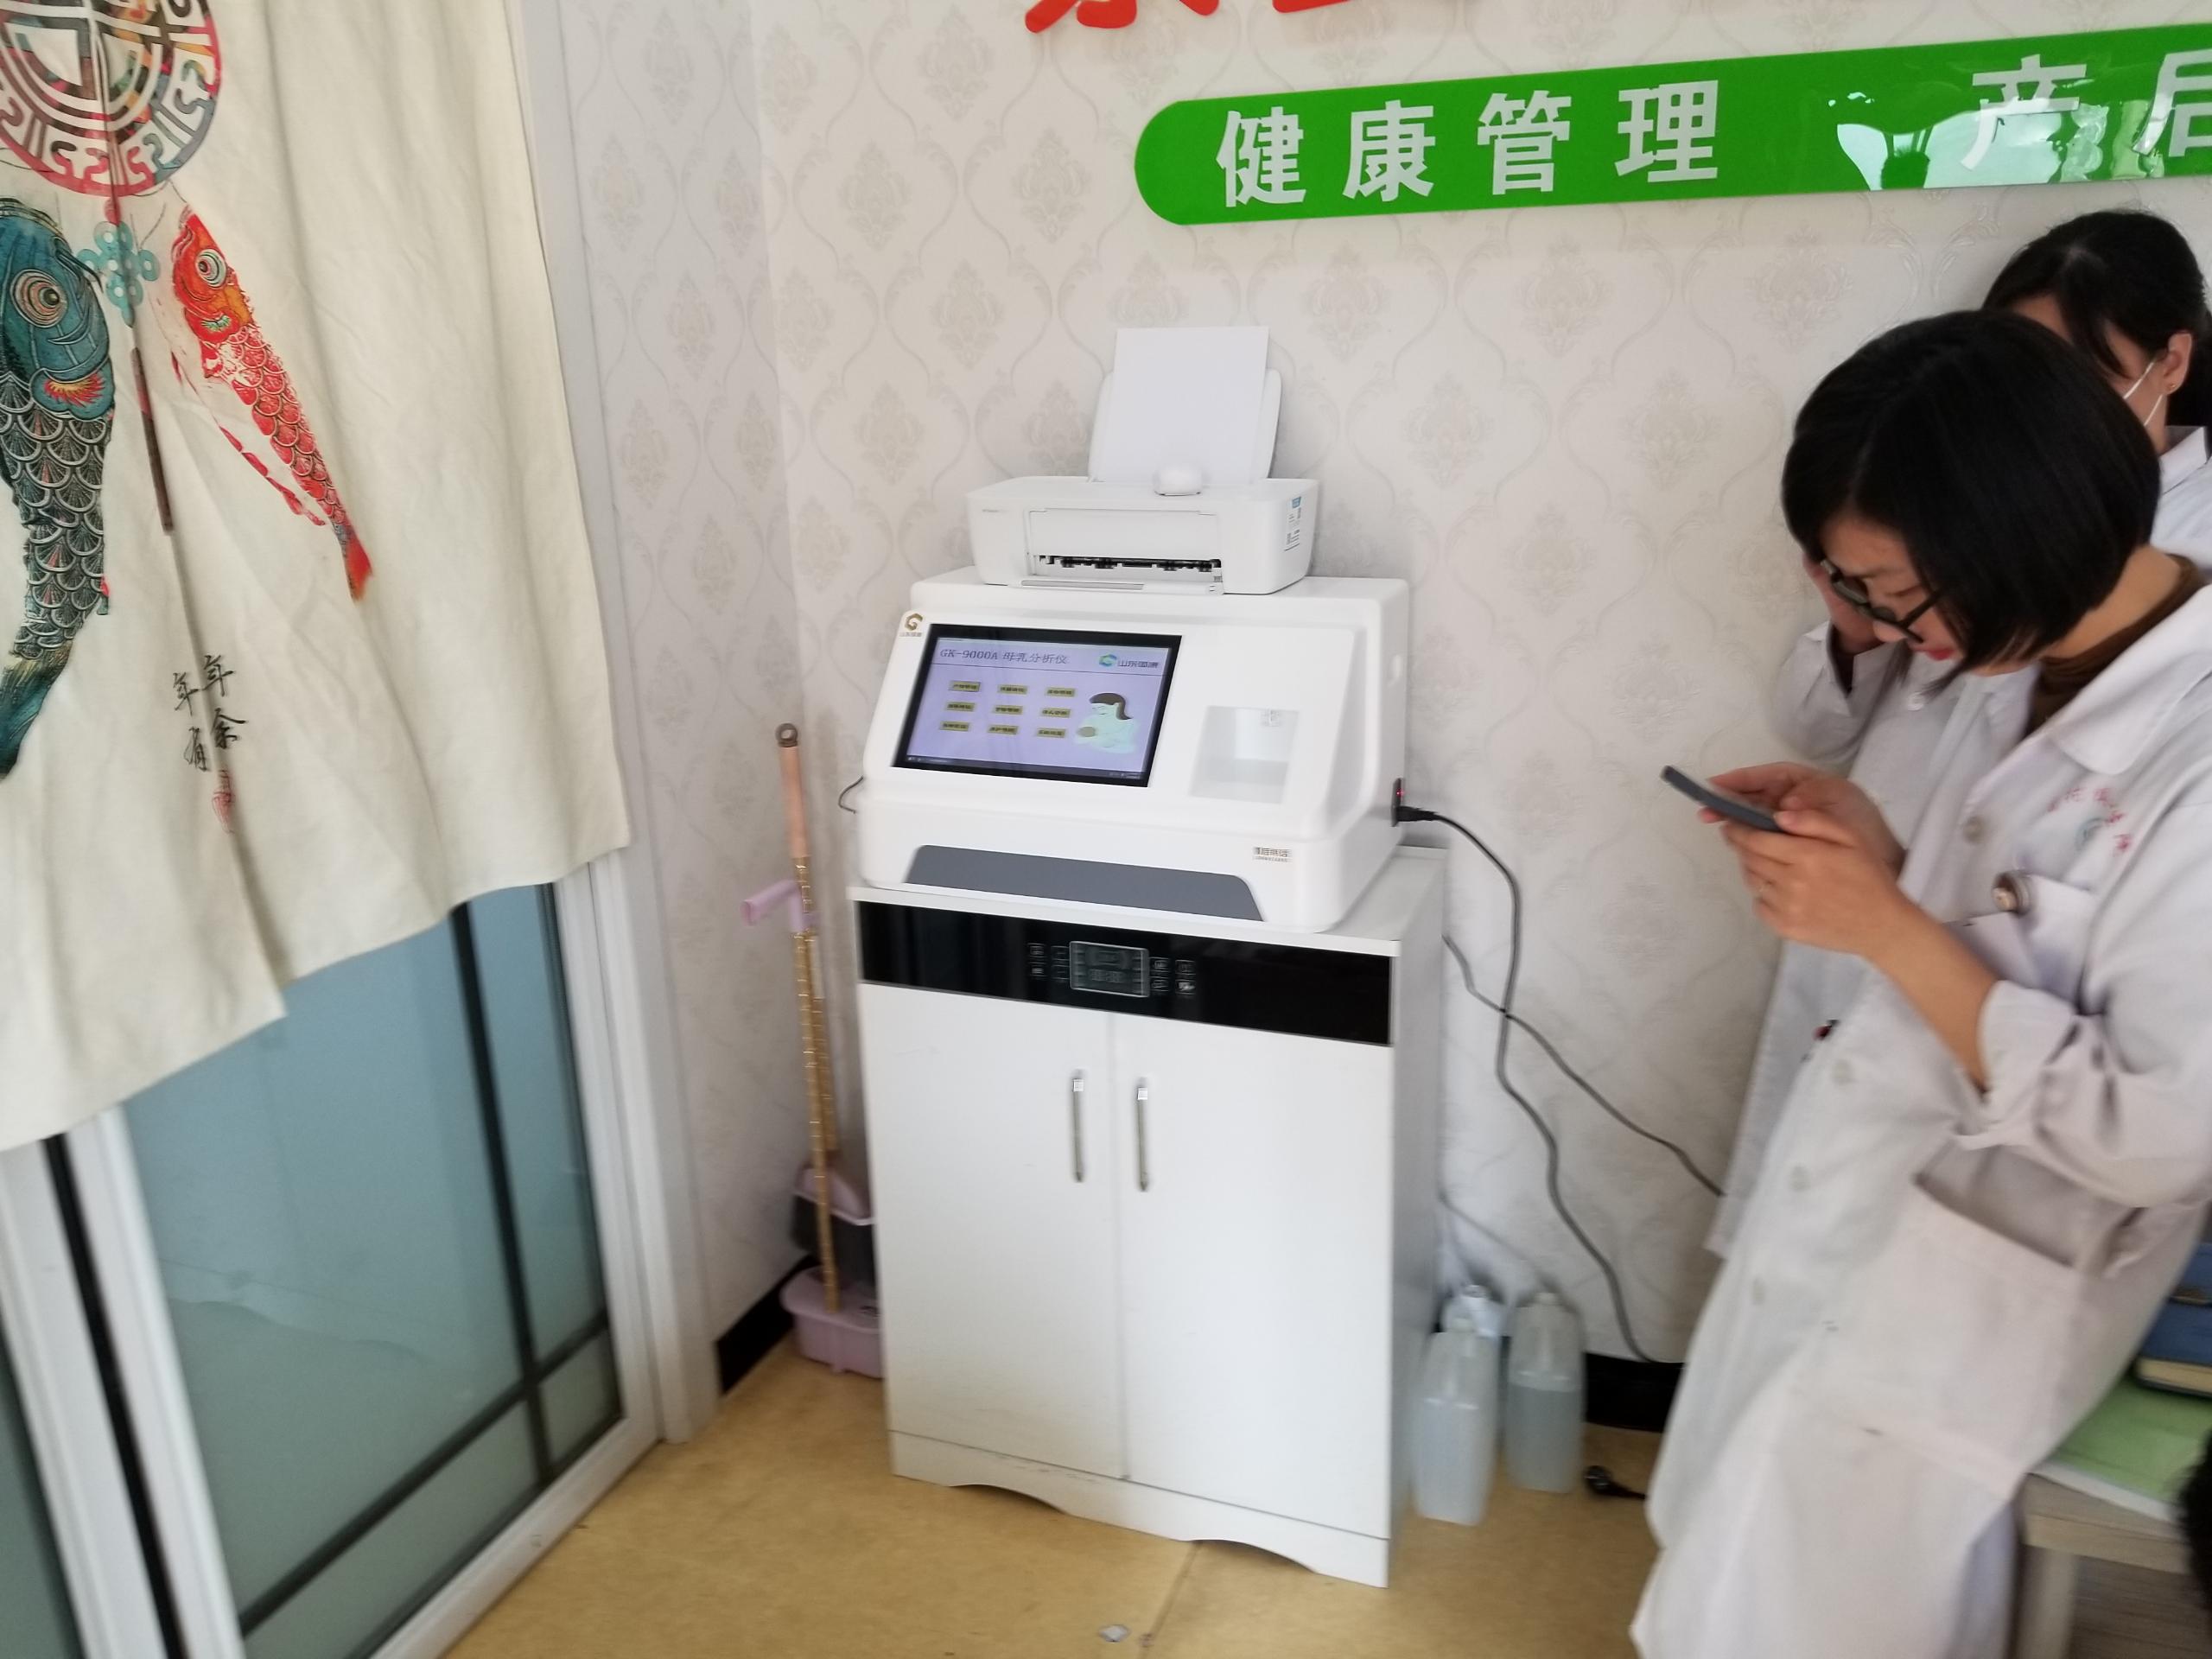 山东国康母乳分析仪在湖北武汉妇幼保健院装机啦！